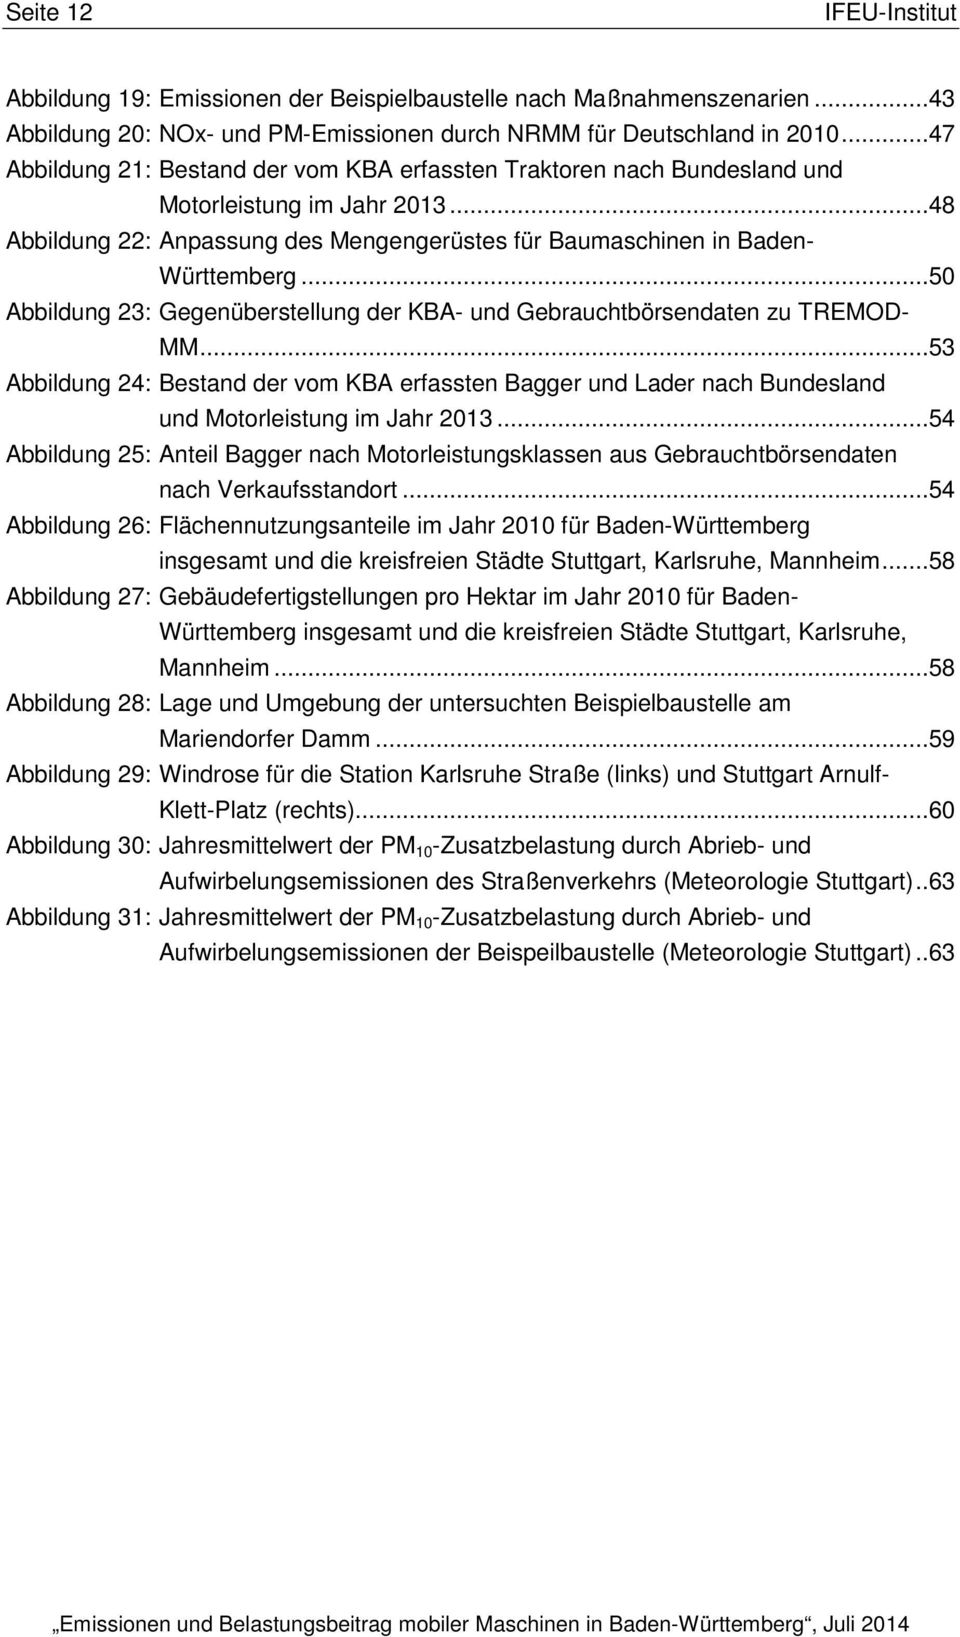 ..50 Abbildung 23: Gegenüberstellung der KBA- und Gebrauchtbörsendaten zu TREMODMM...53 Abbildung 24: Bestand der vom KBA erfassten Bagger und Lader nach Bundesland und Motorleistung im Jahr 2013.